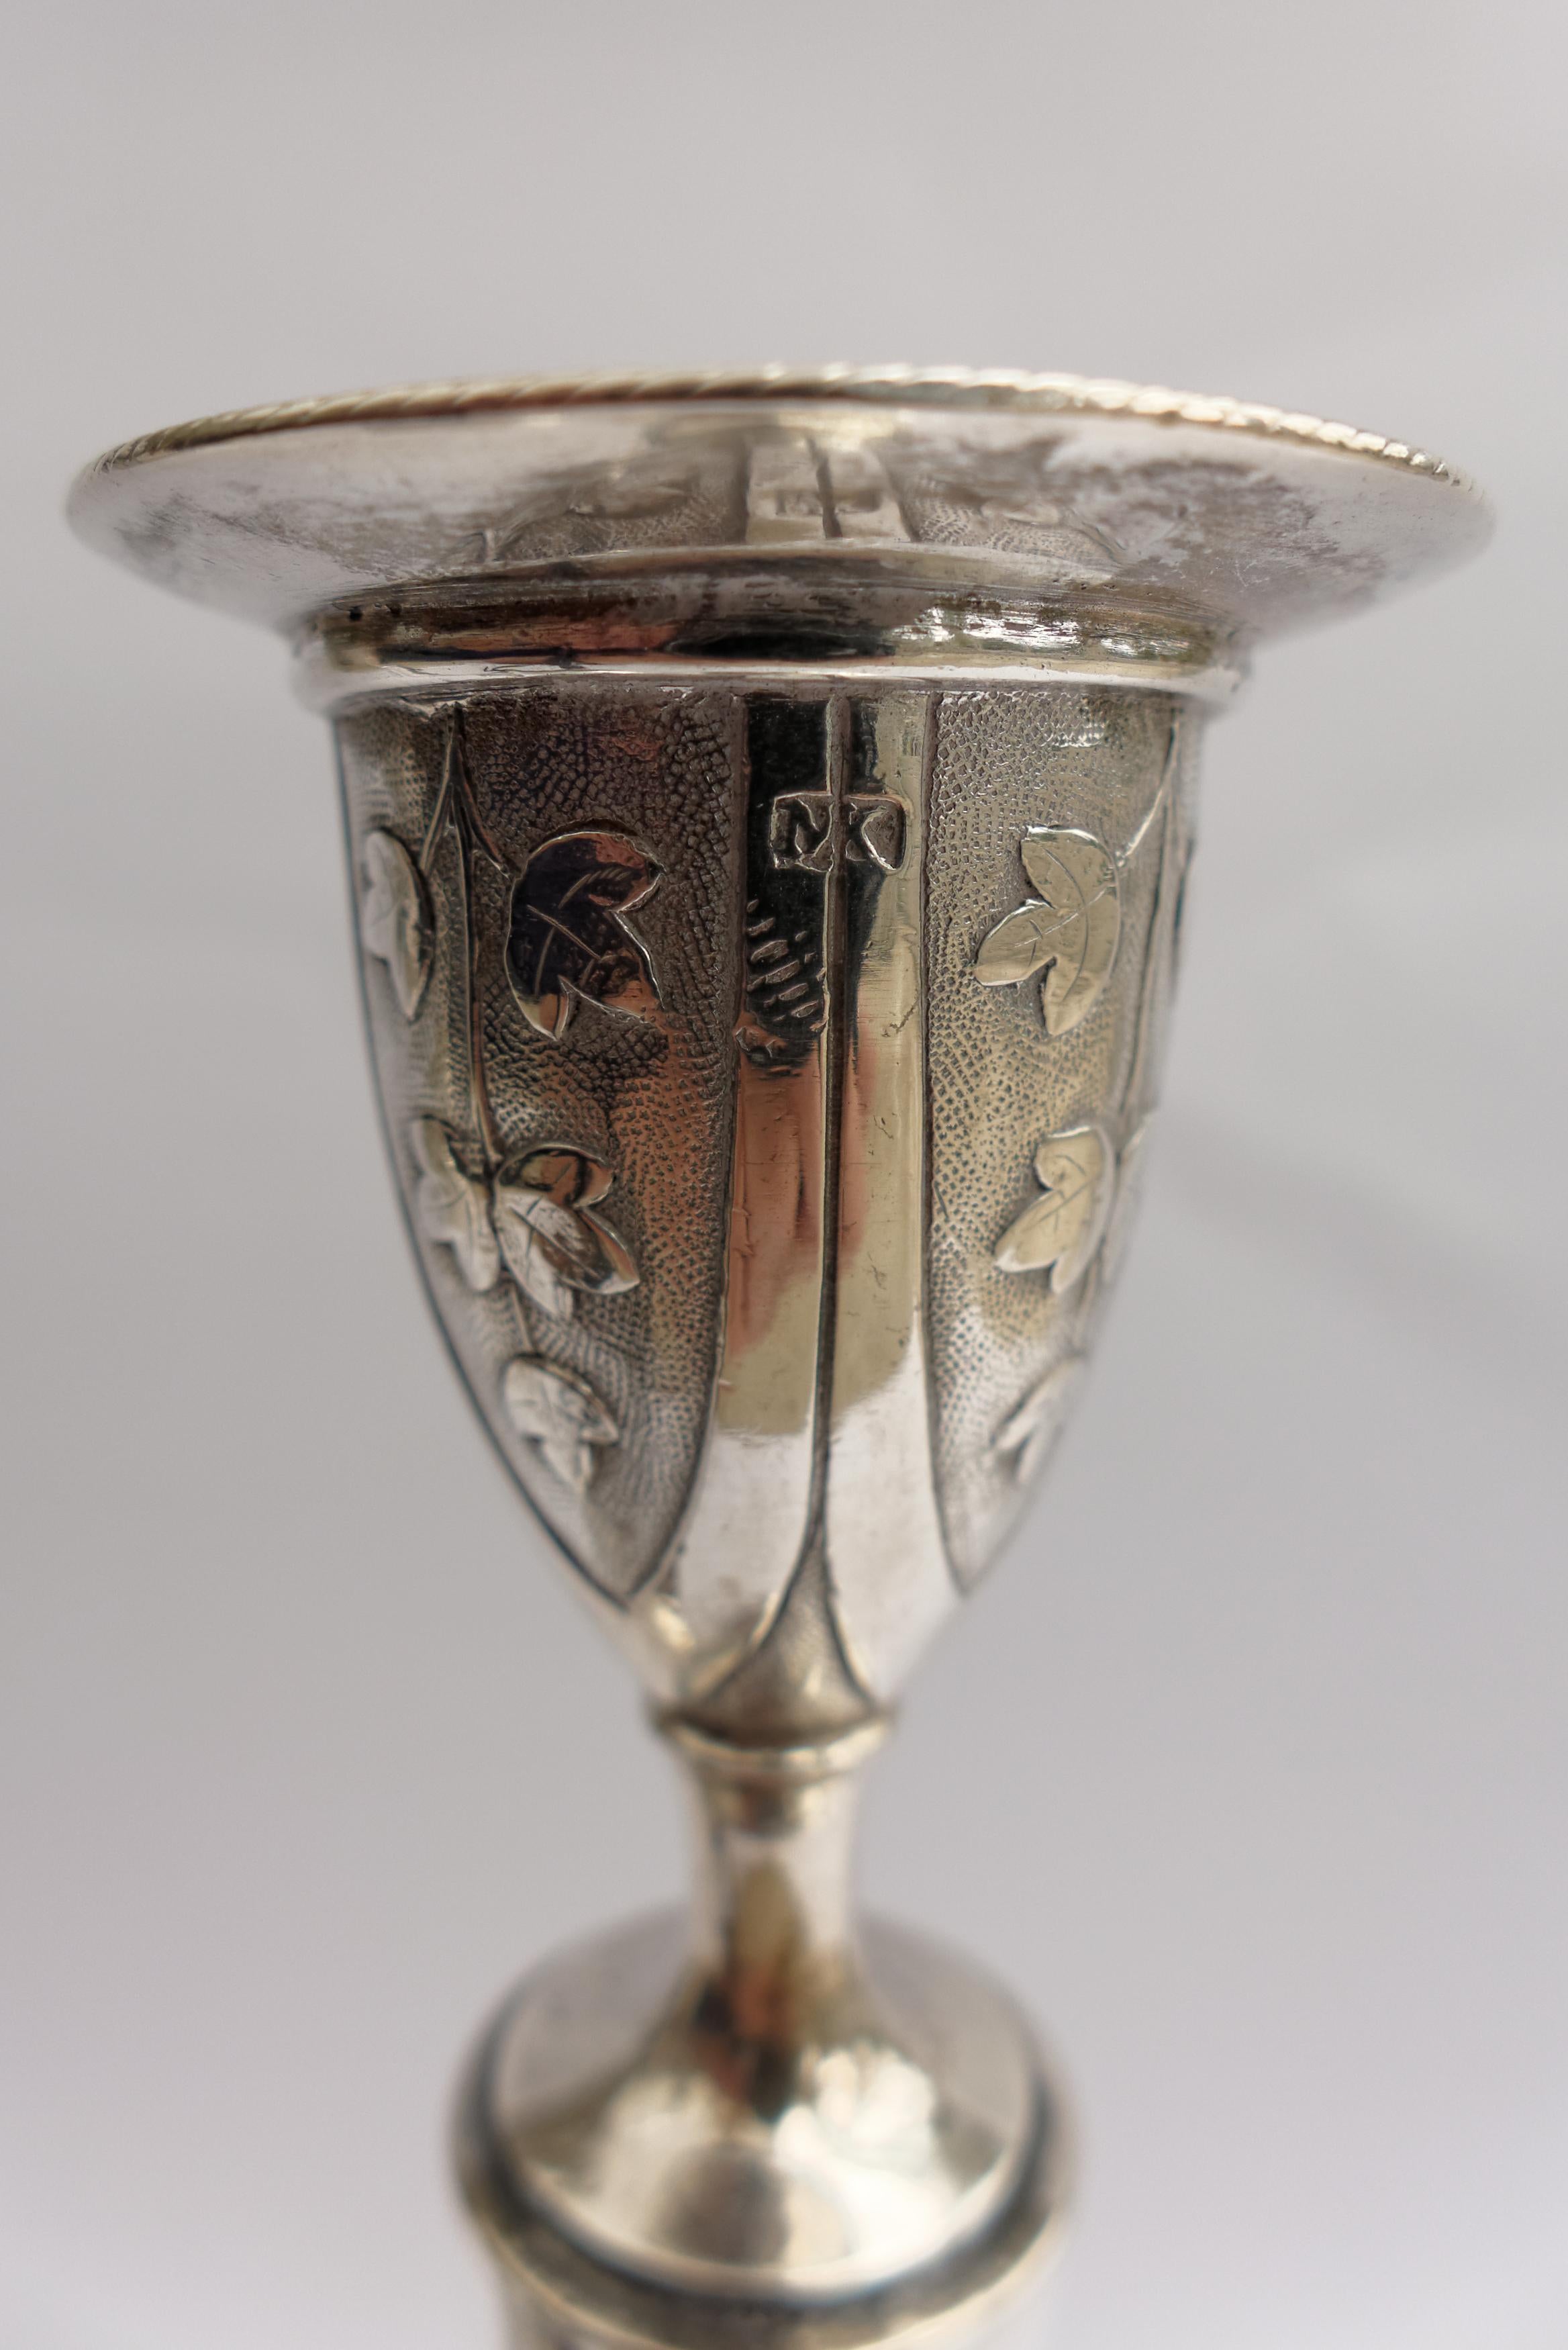 Une élégante paire de chandeliers néoclassiques austro-hongrois en argent. Chacune repose sur un pied circulaire, gravé de panneaux floraux, la tige légèrement effilée est gravée d'un monogramme 